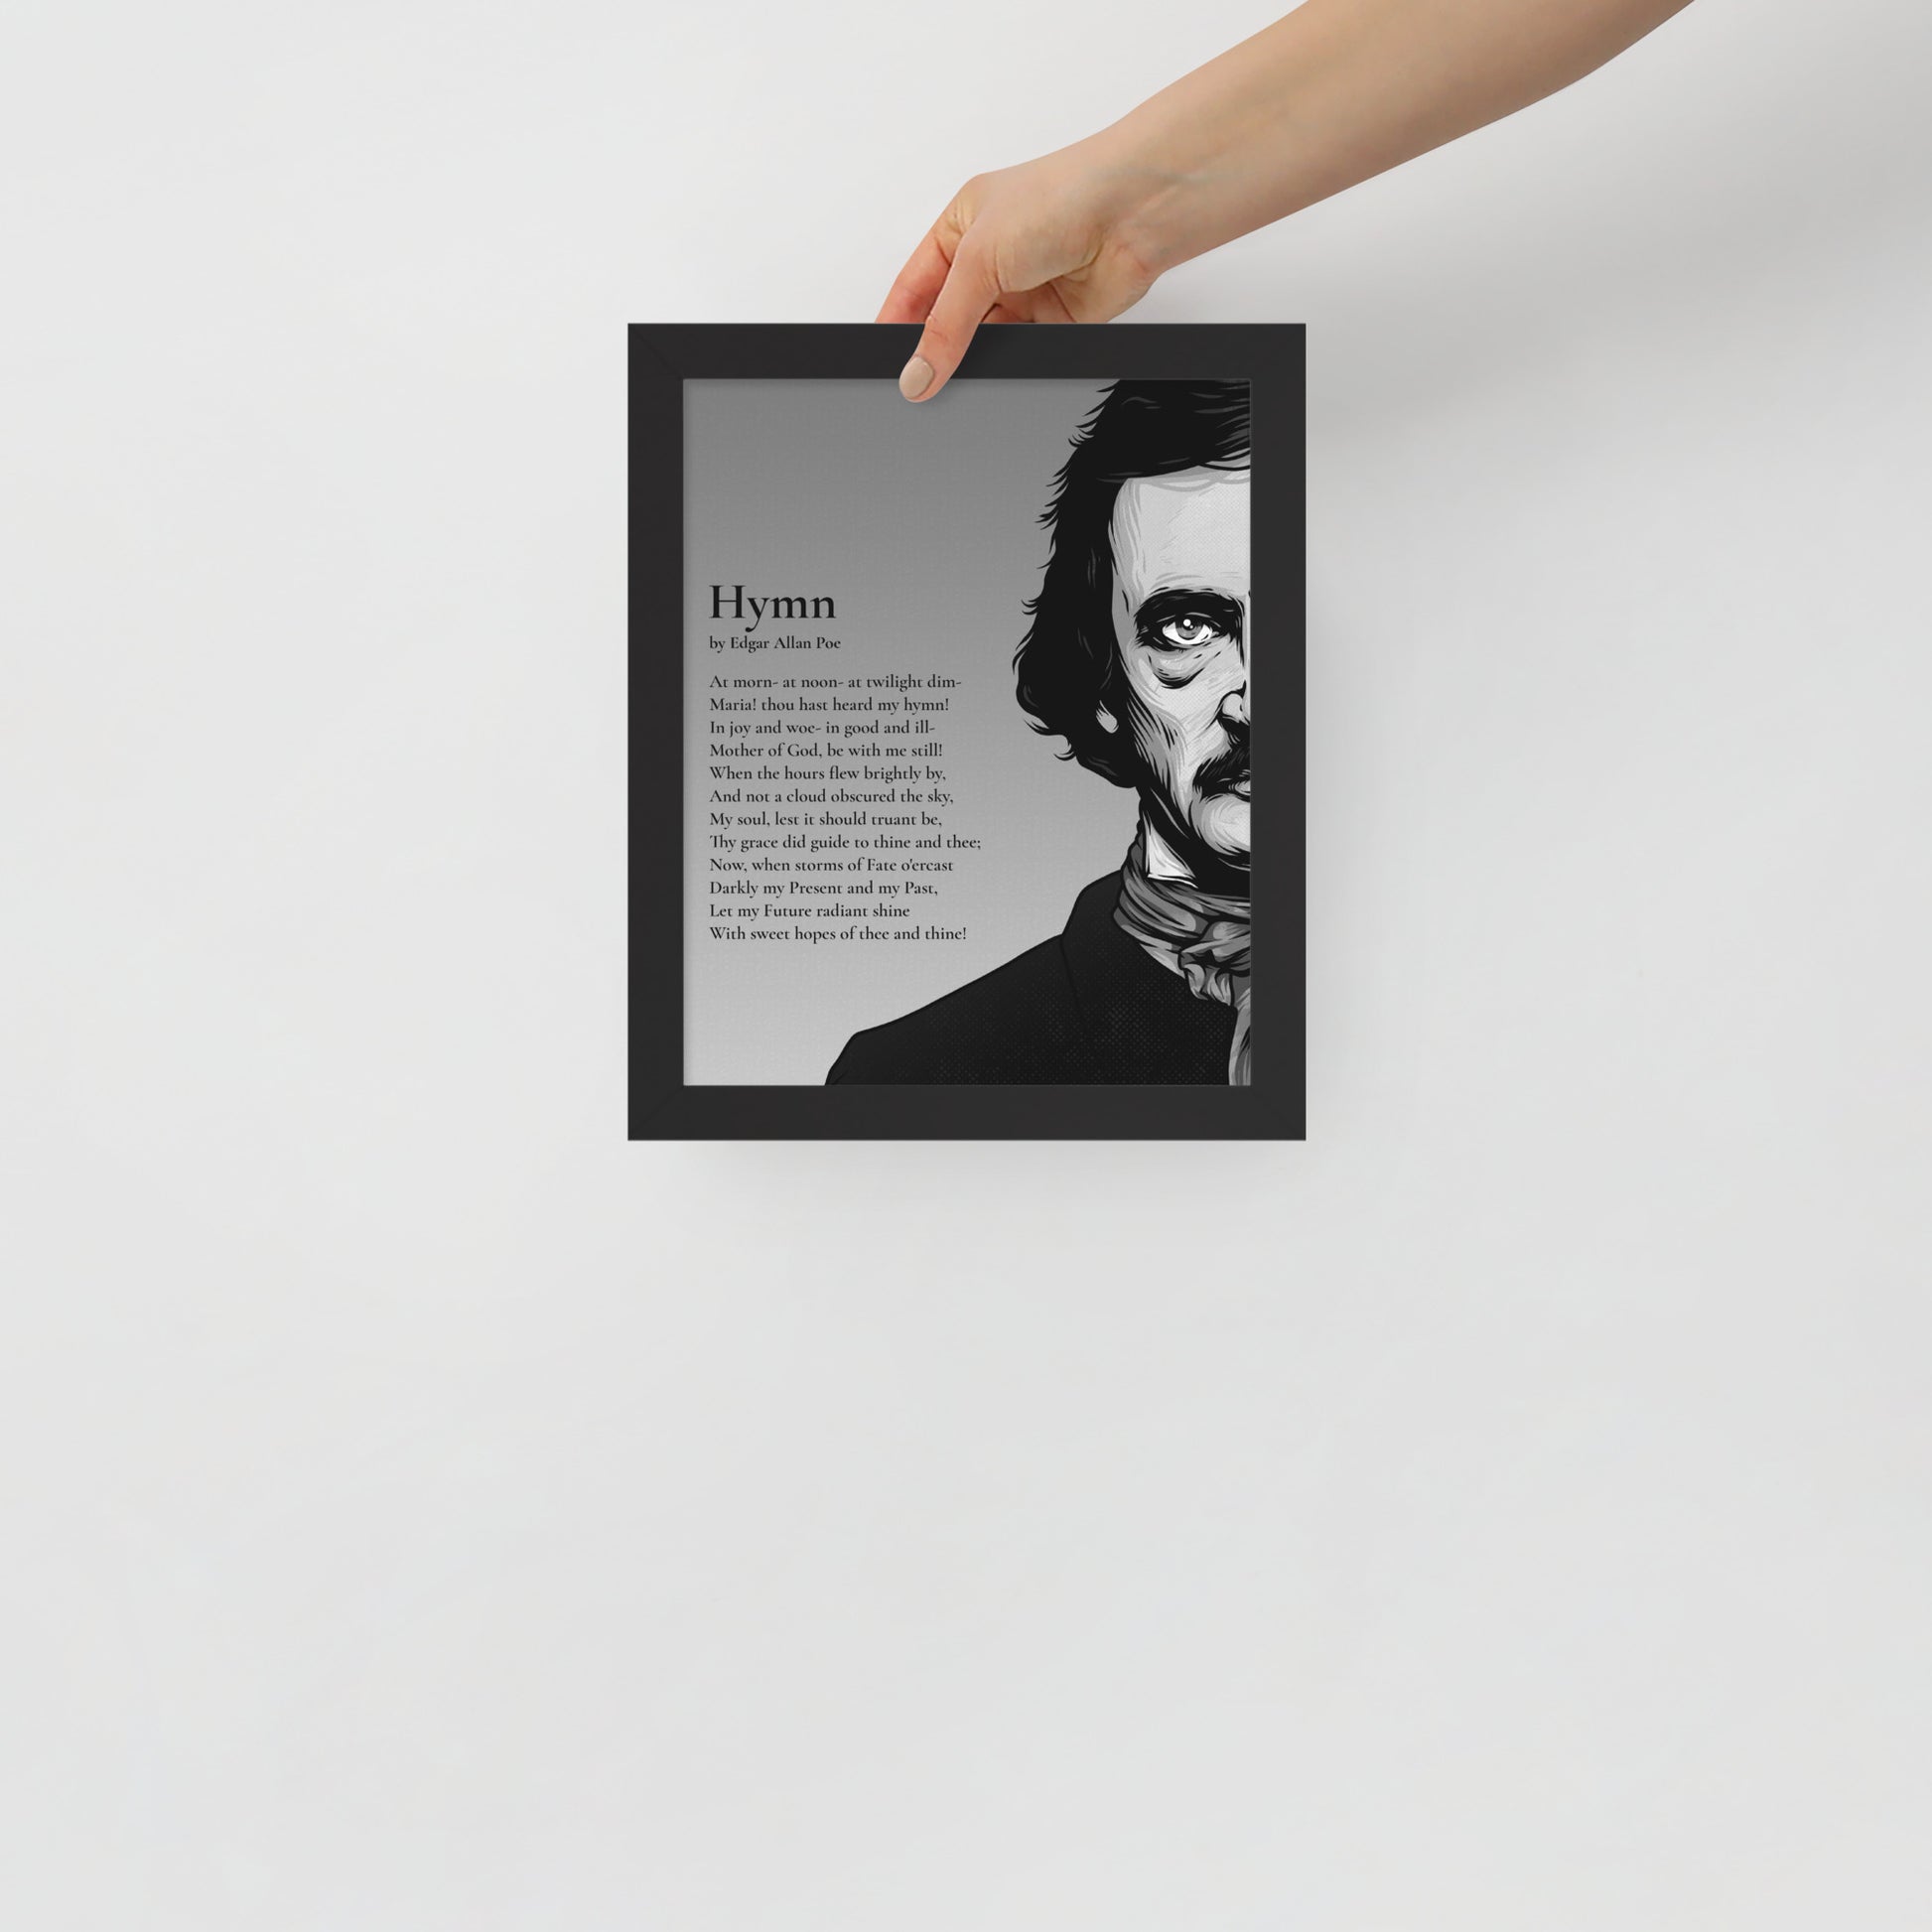 Edgar Allan Poe's 'Hymn' Framed Matted Poster - 8 x 10 Black Frame